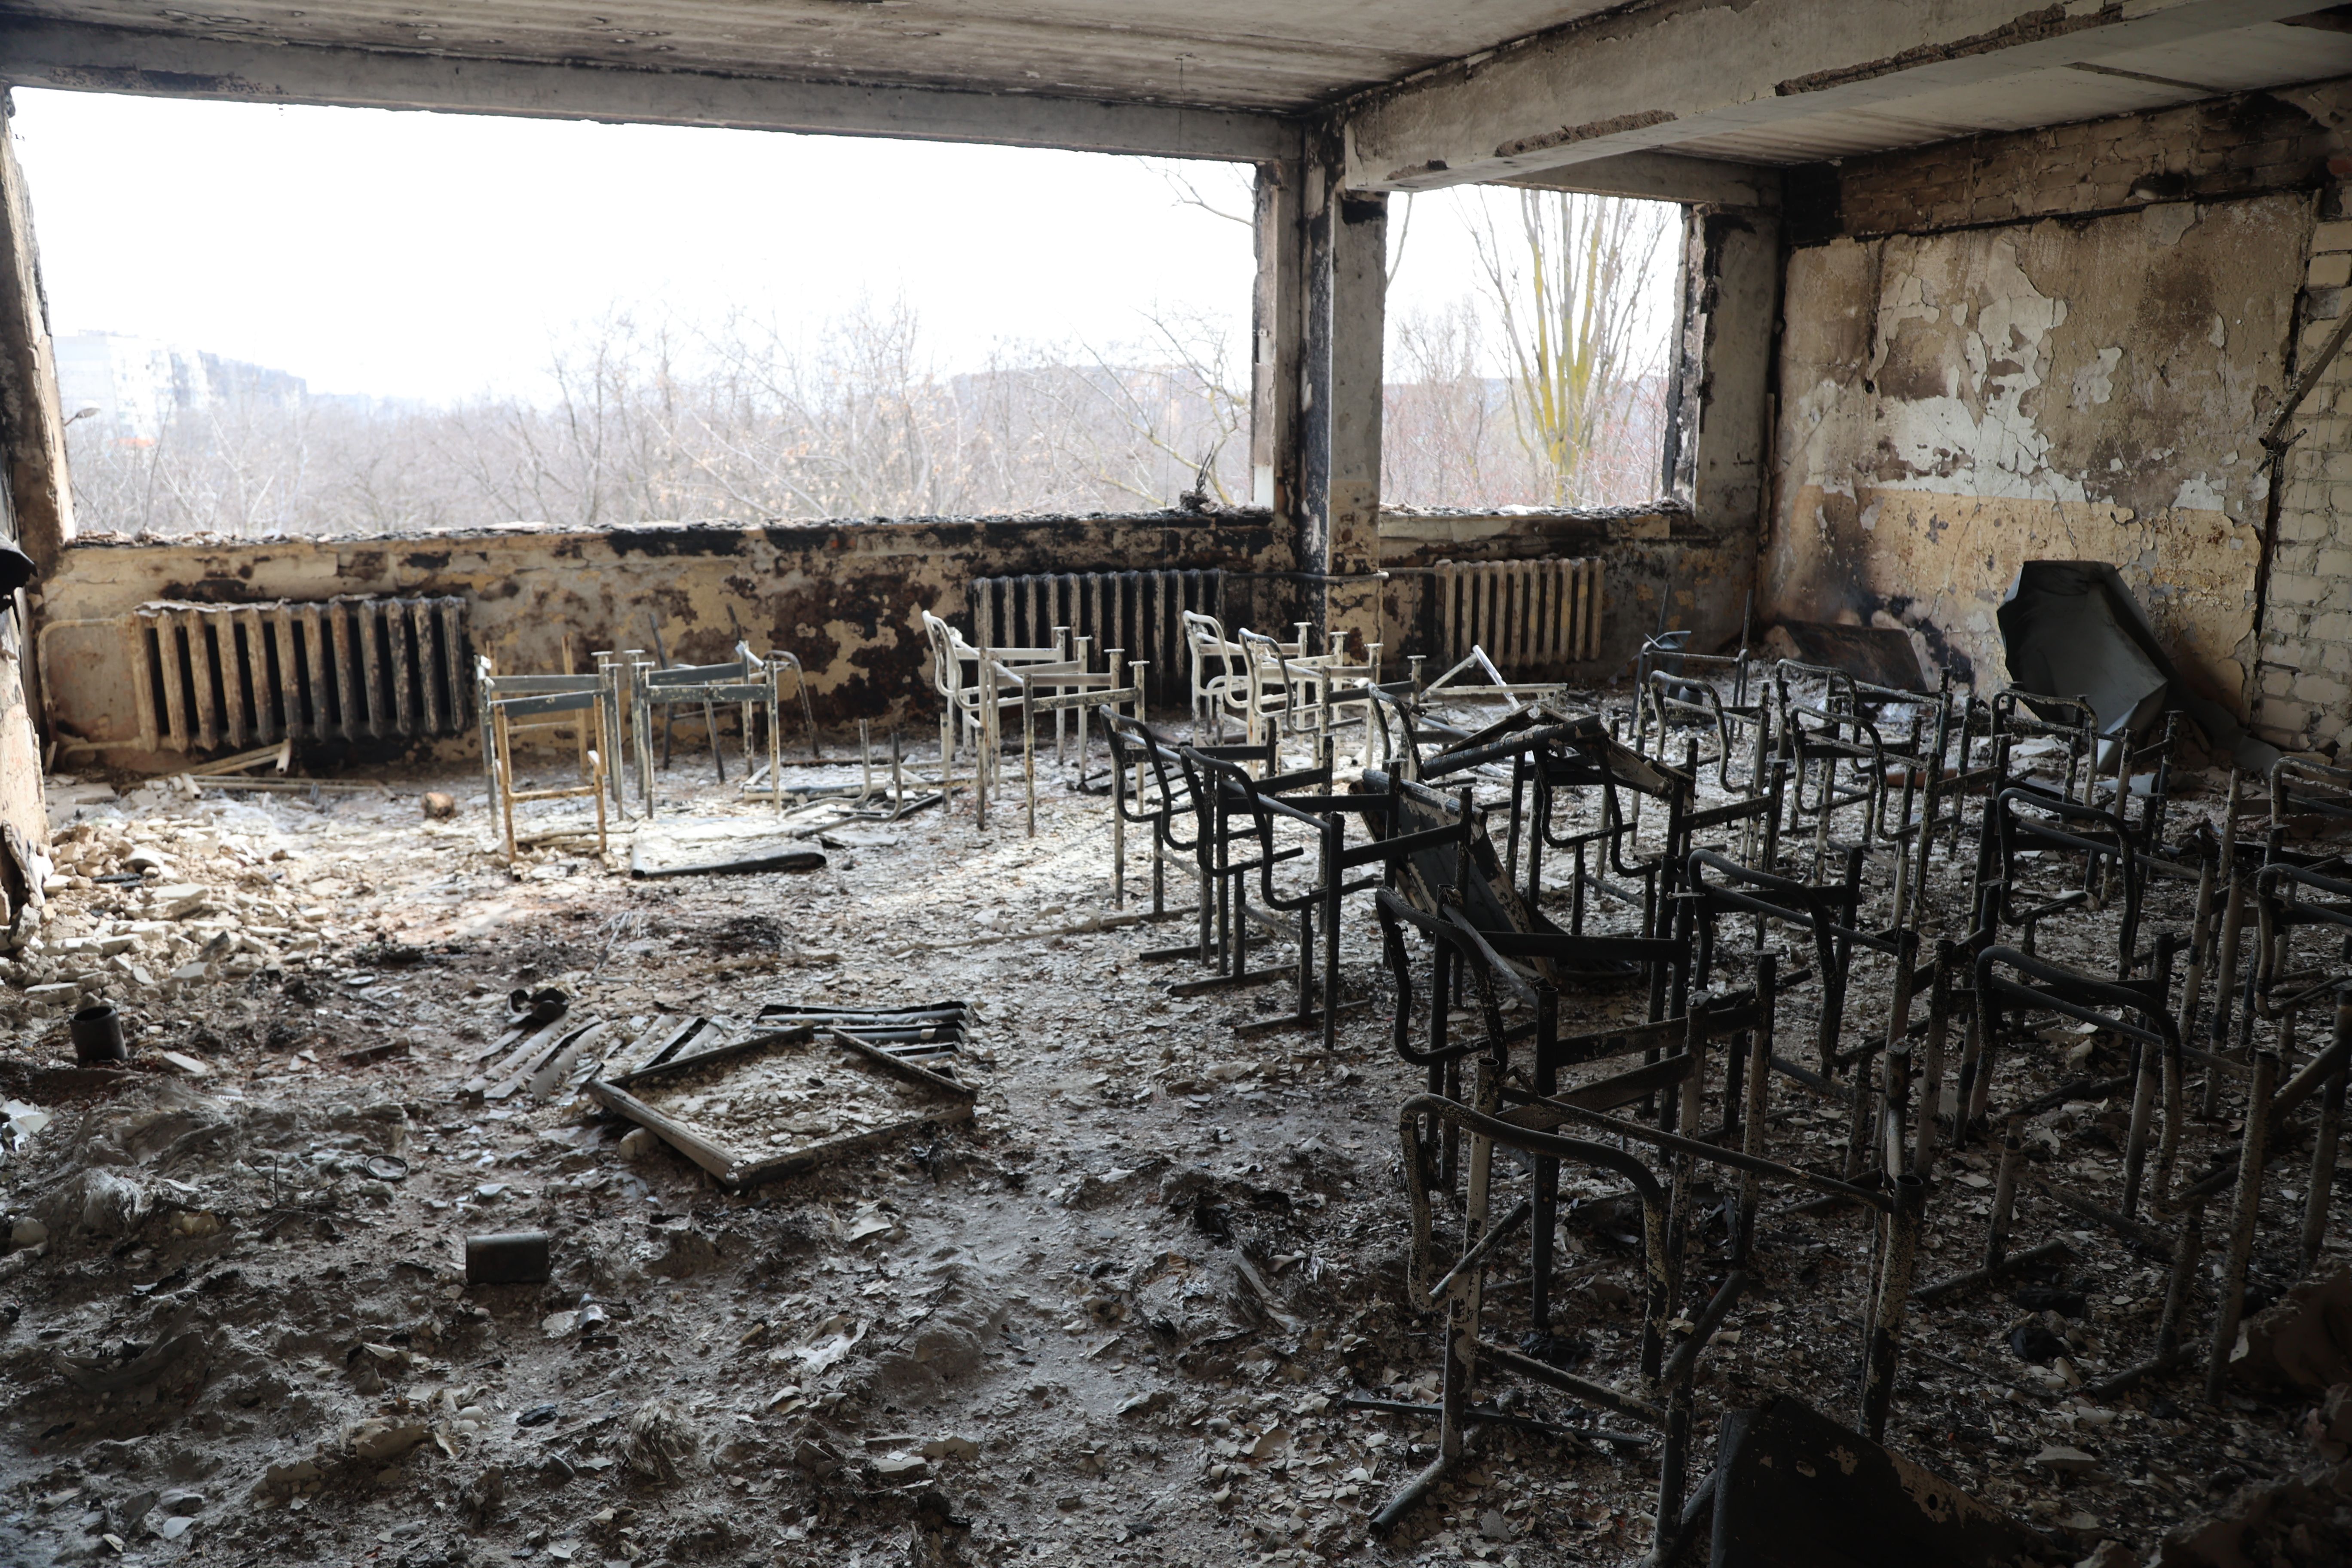     Een blik op de beschadigde school na de bomaanslag op de Oekraïense stad Mariupol, die onder controle staat van het Russische leger en pro-Russische separatisten, op 29 maart.